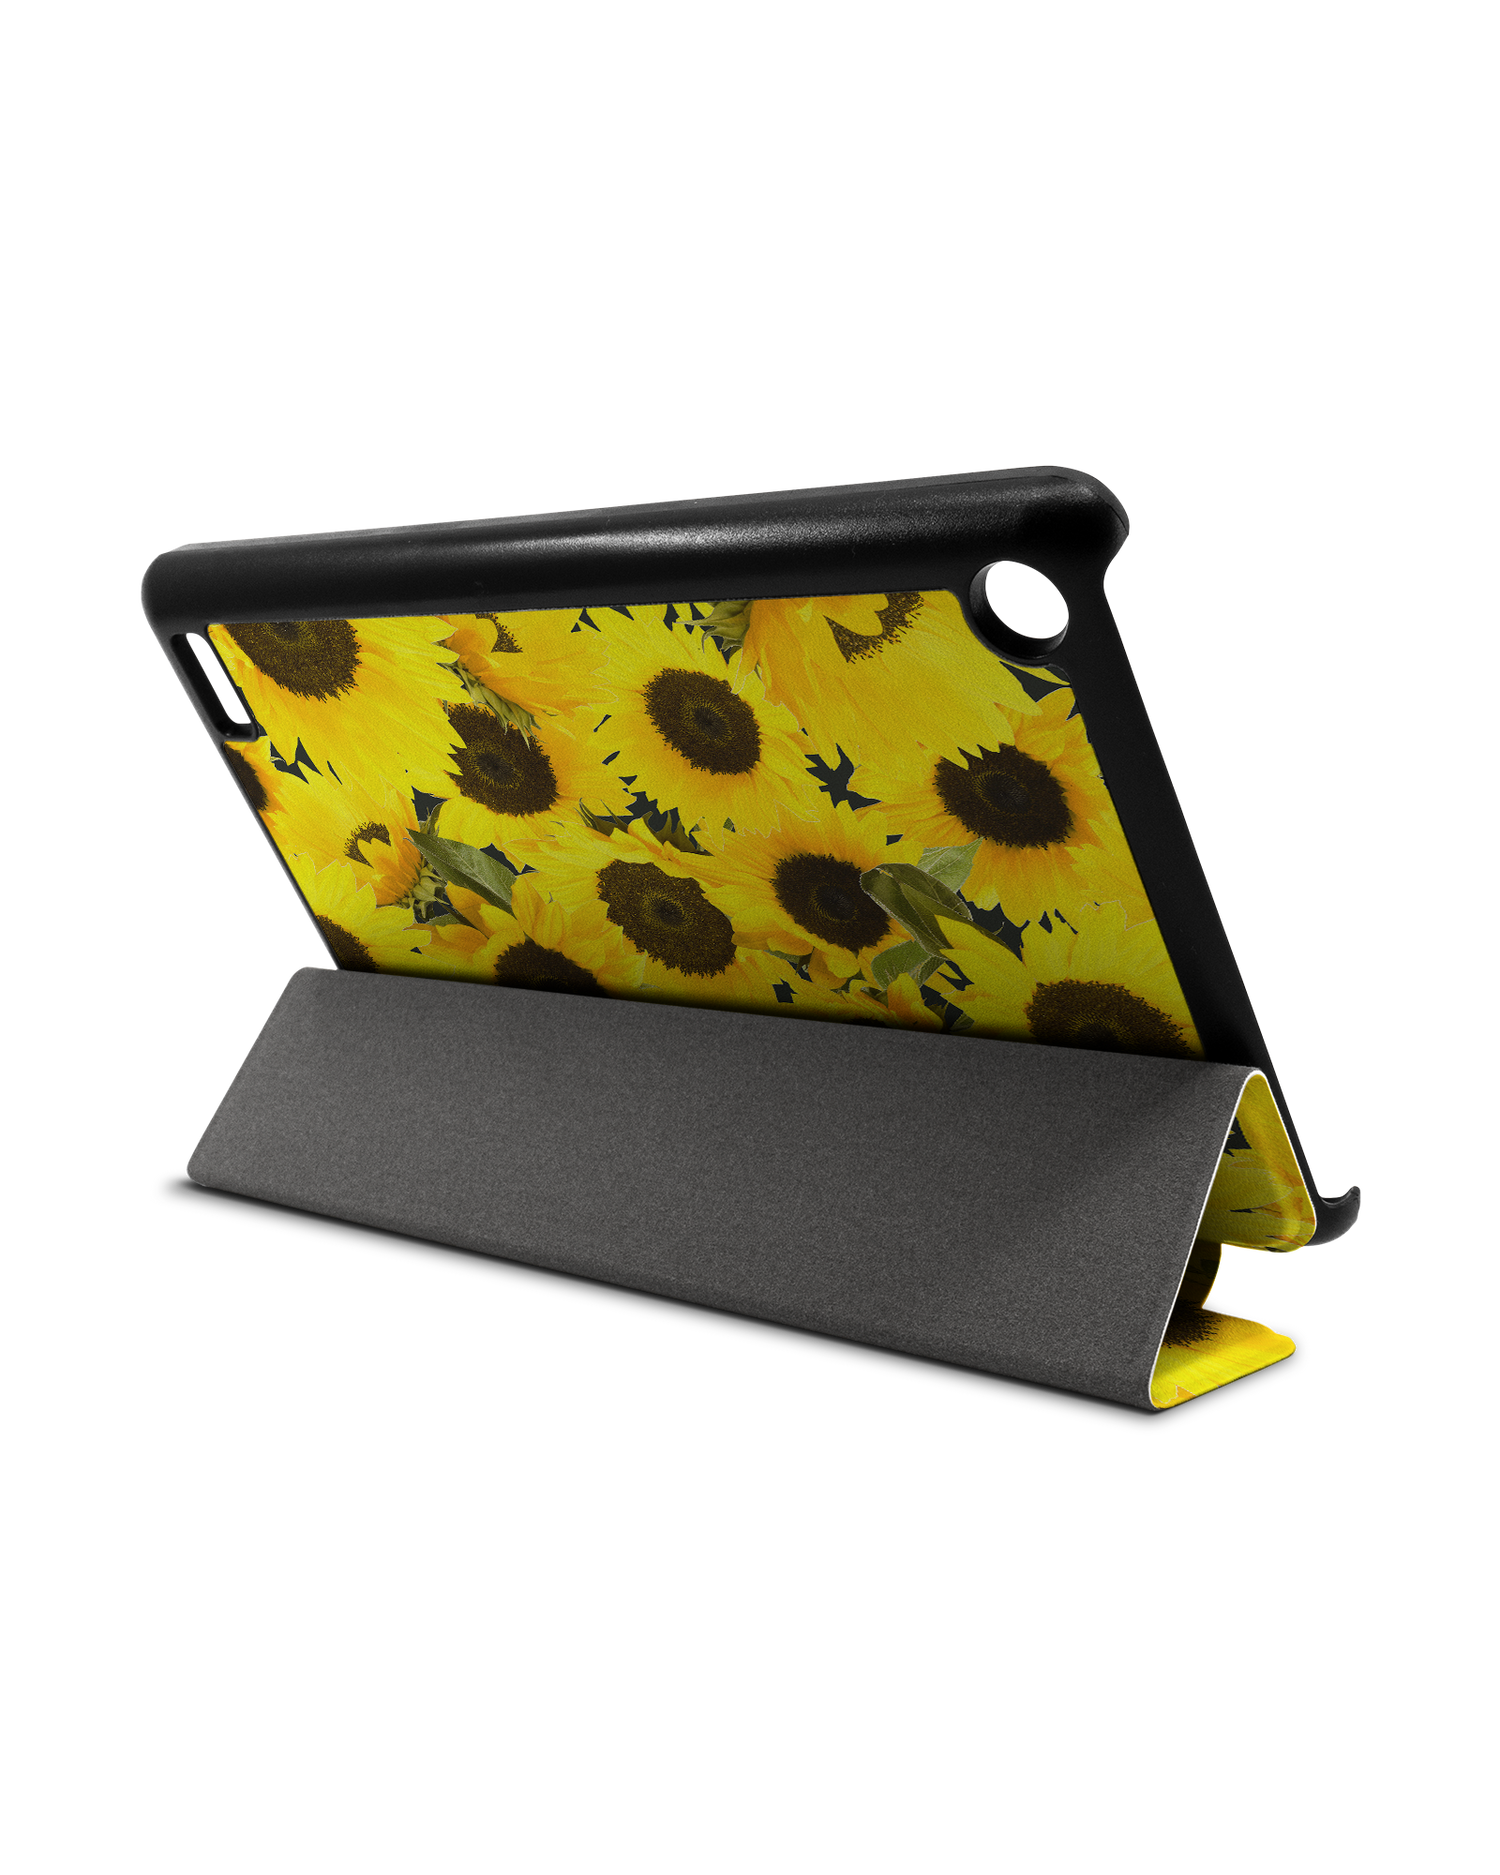 Sunflowers Tablet Smart Case für Amazon Fire 7: Aufgestellt im Querformat